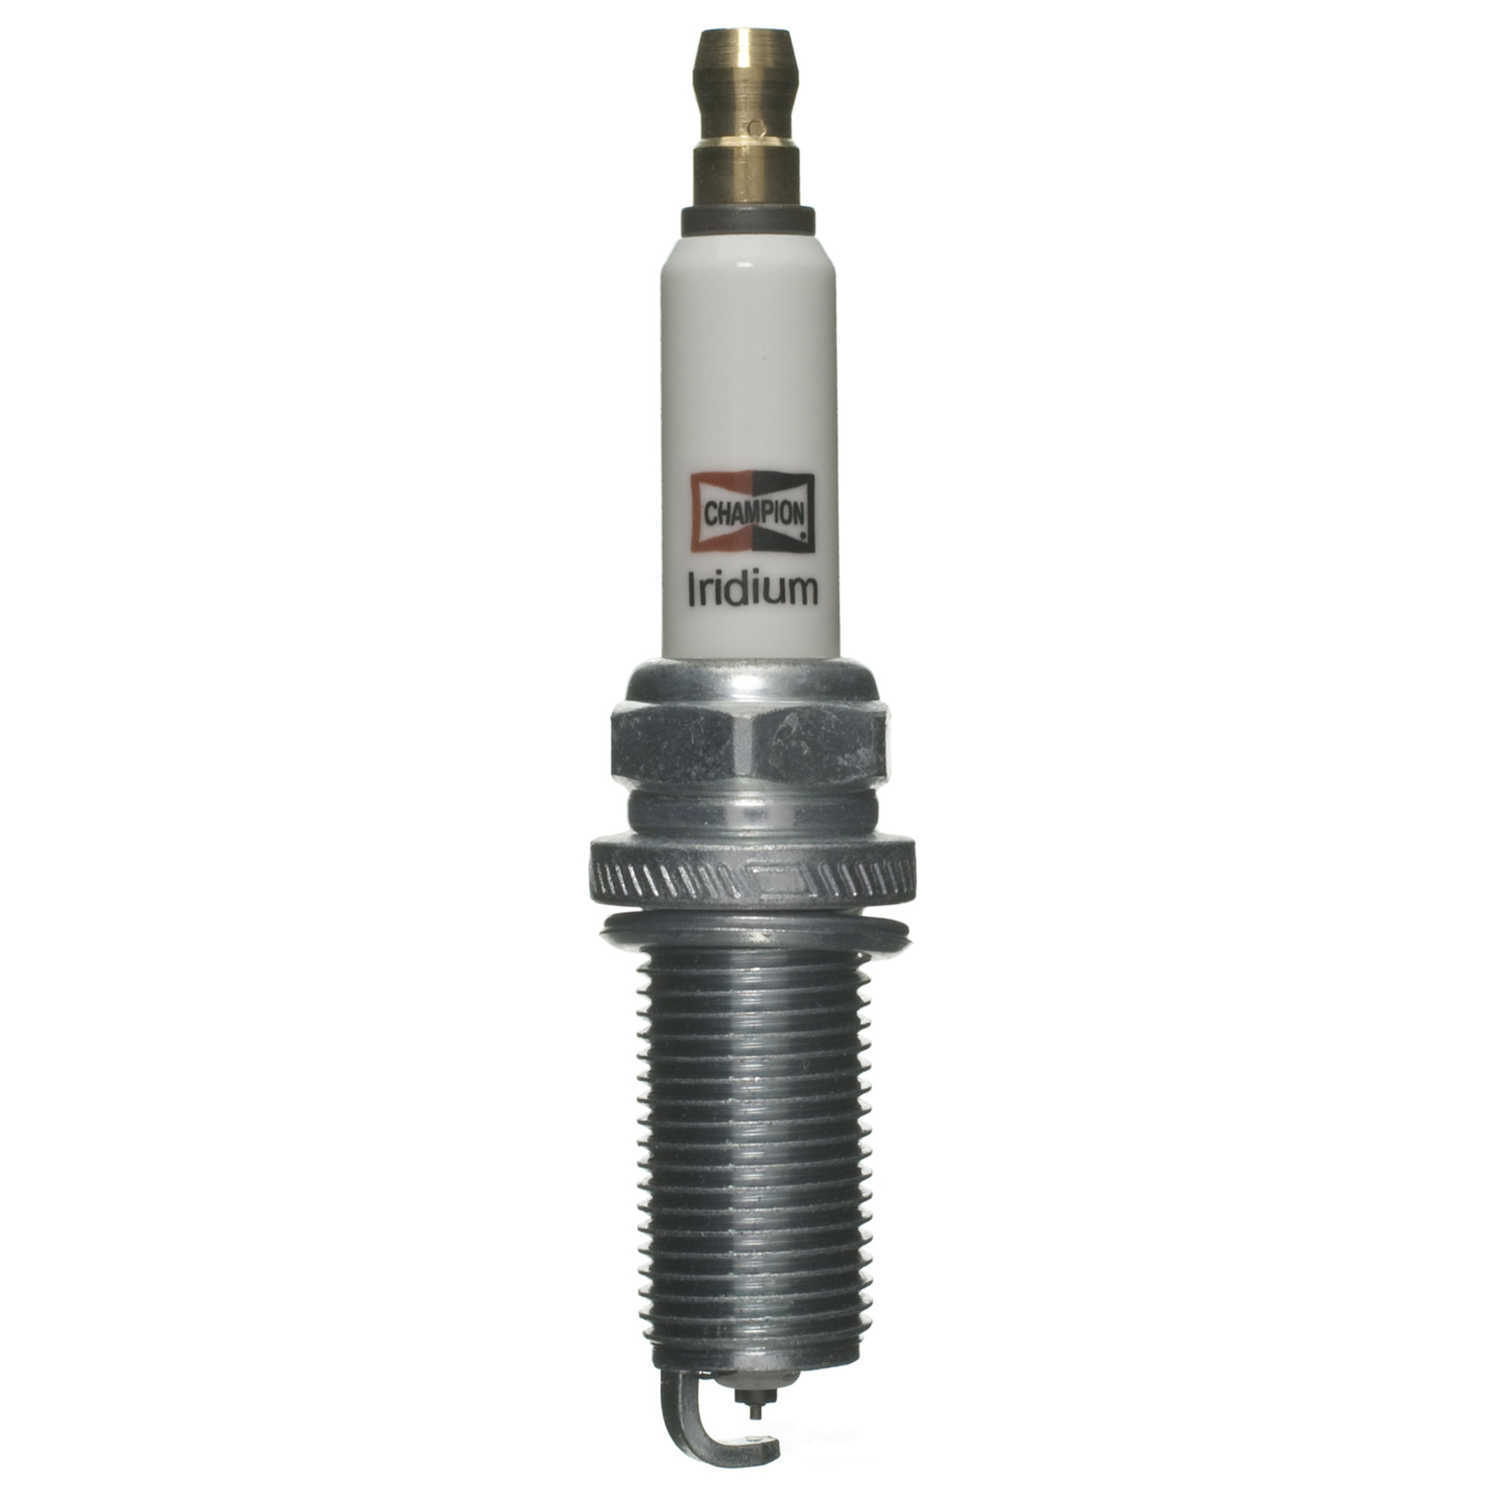 CHAMPION SPARK PLUGS - Iridium Spark Plug - CHA 9030